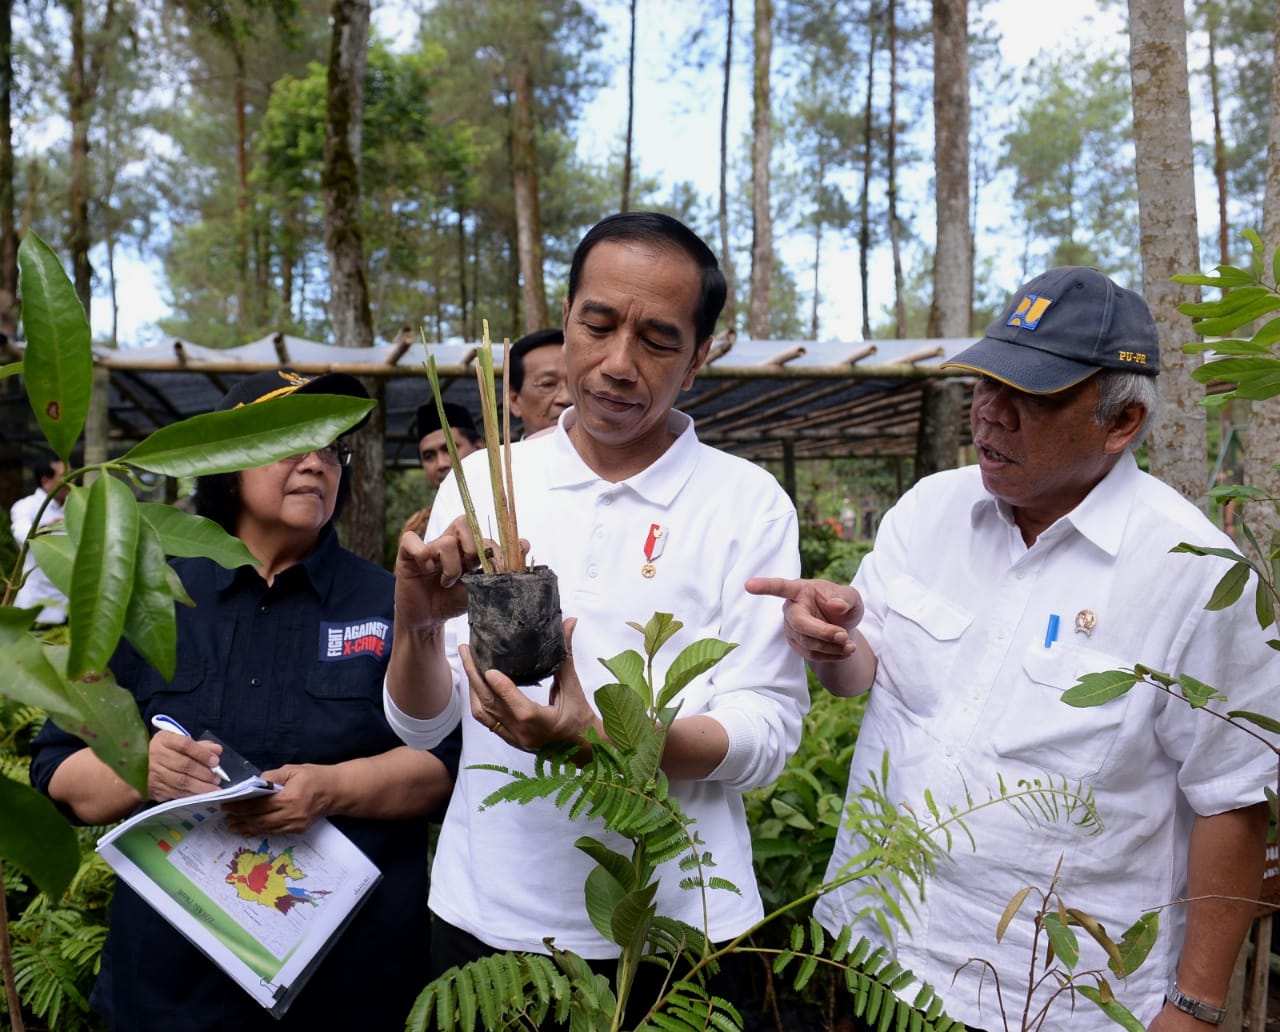 Presiden Joko Widodo (Jokowi) menam pohon untuk menghijaukan kawasan Taman Gunung Merapi, Magelang, Jumat 14 Februari 2020. (Foto: BPMI Setpres)